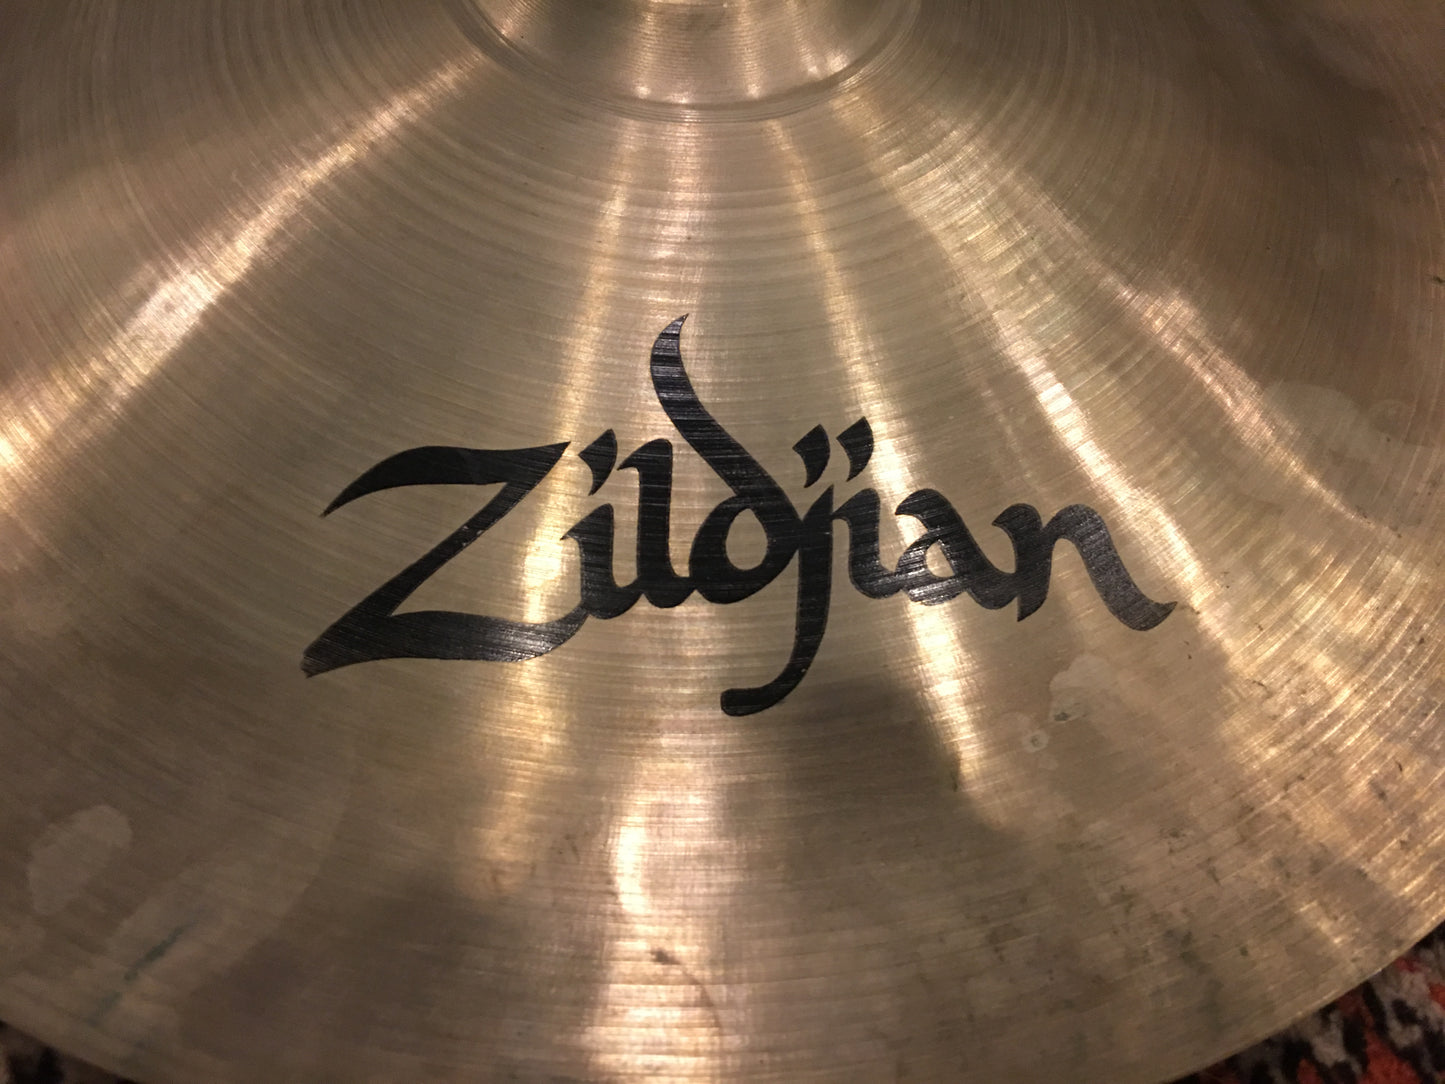 16" Zildjian A China Boy High Cymbal 880g